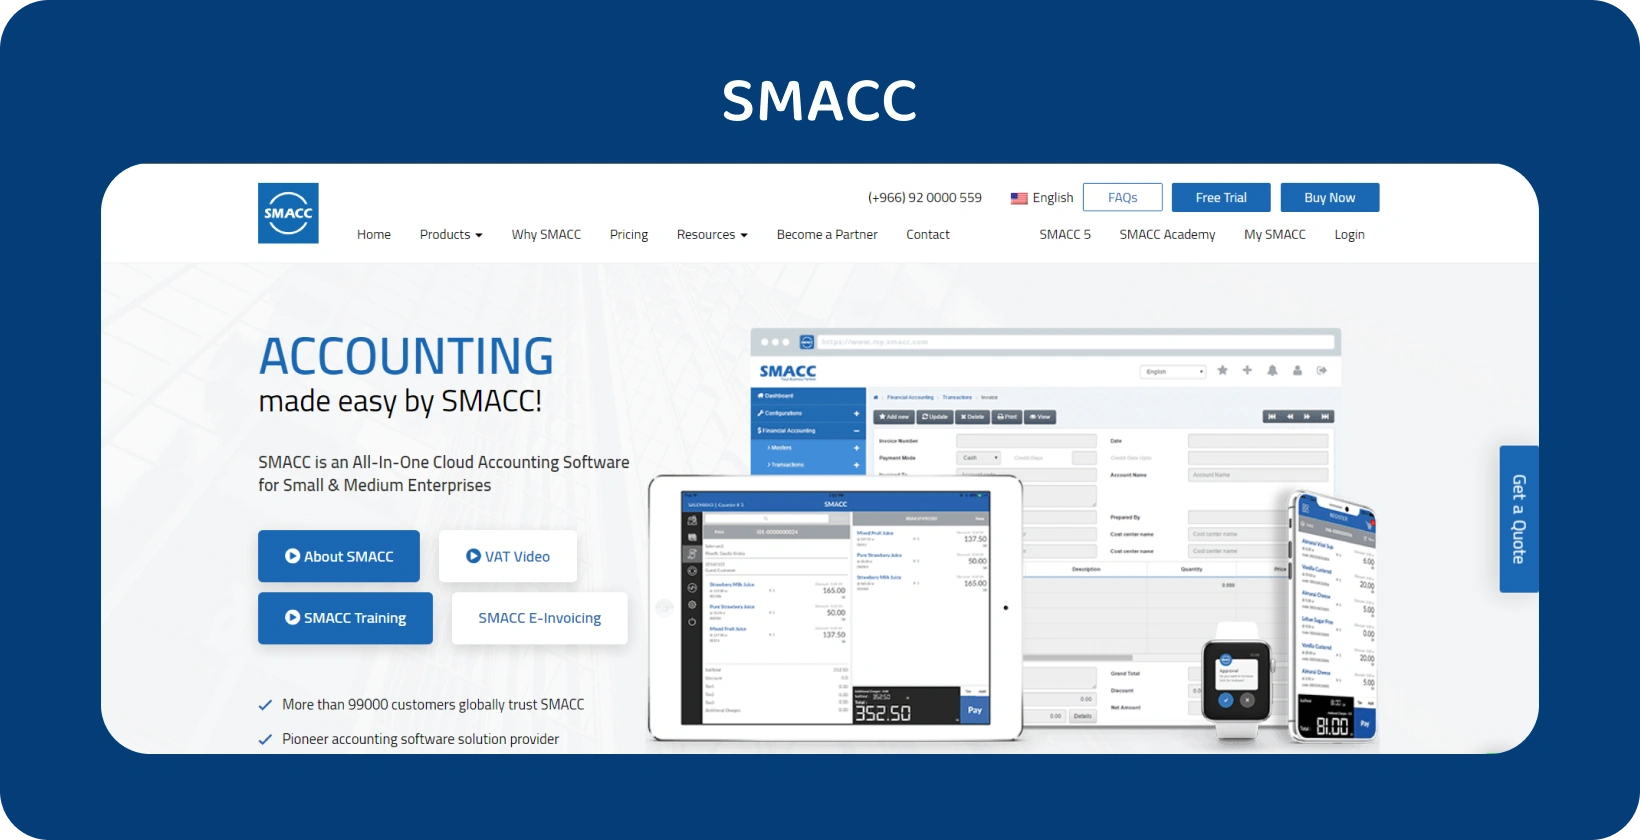 SMACC Cloud Accounting Software dipaparkan pada pelbagai peranti, meningkatkan pengurusan kewangan untuk PKS.